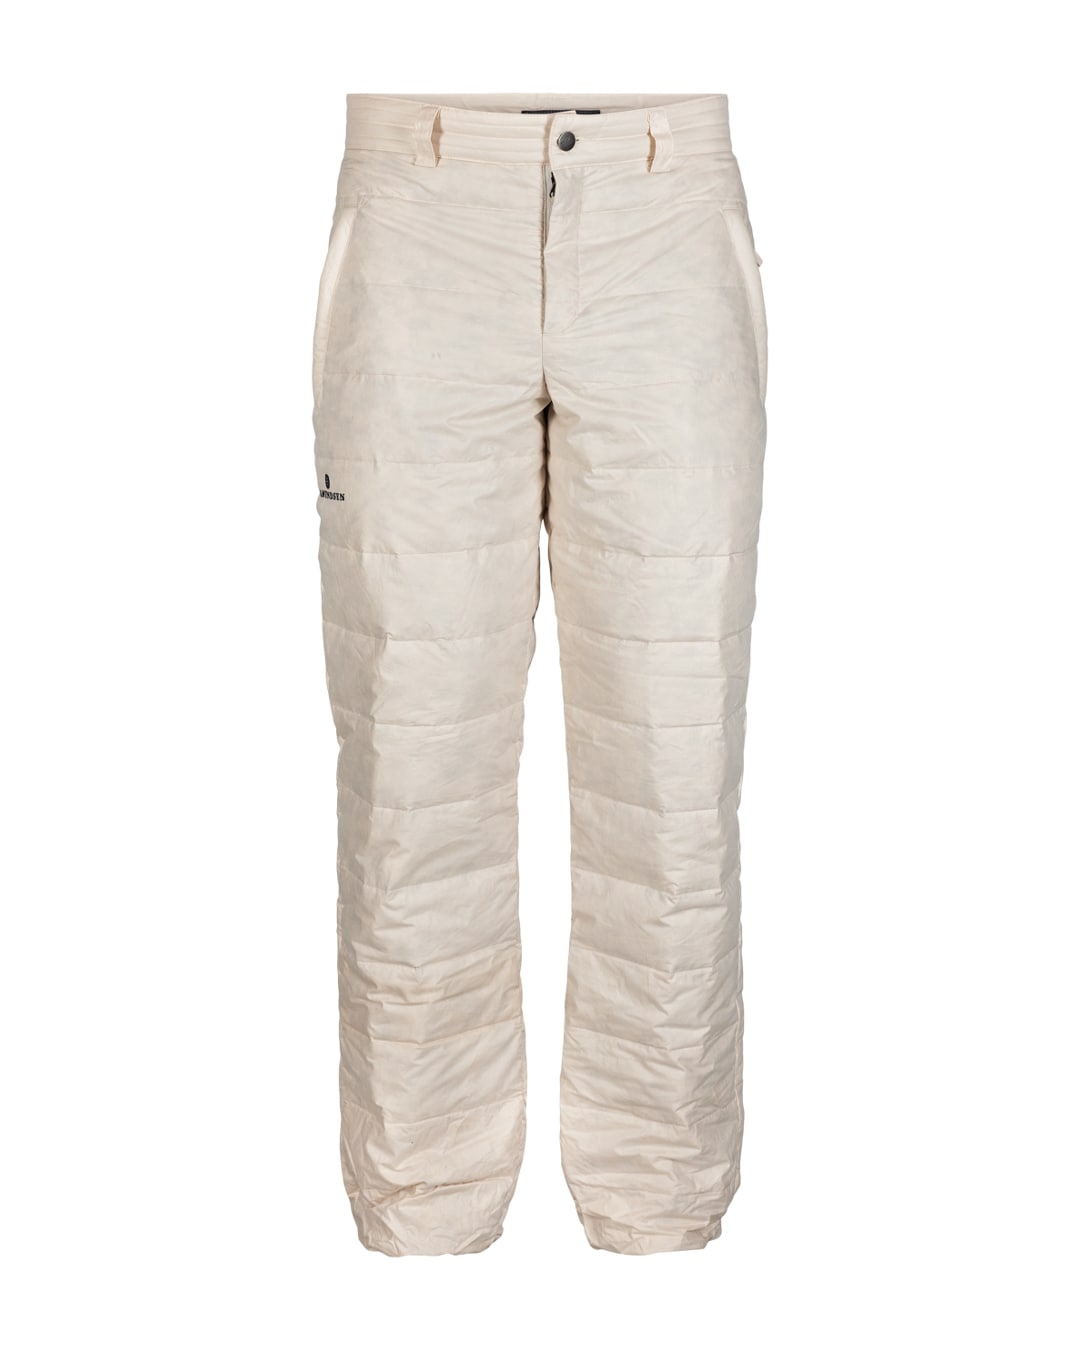 Amundsen Sports Downtown Cotton Pants